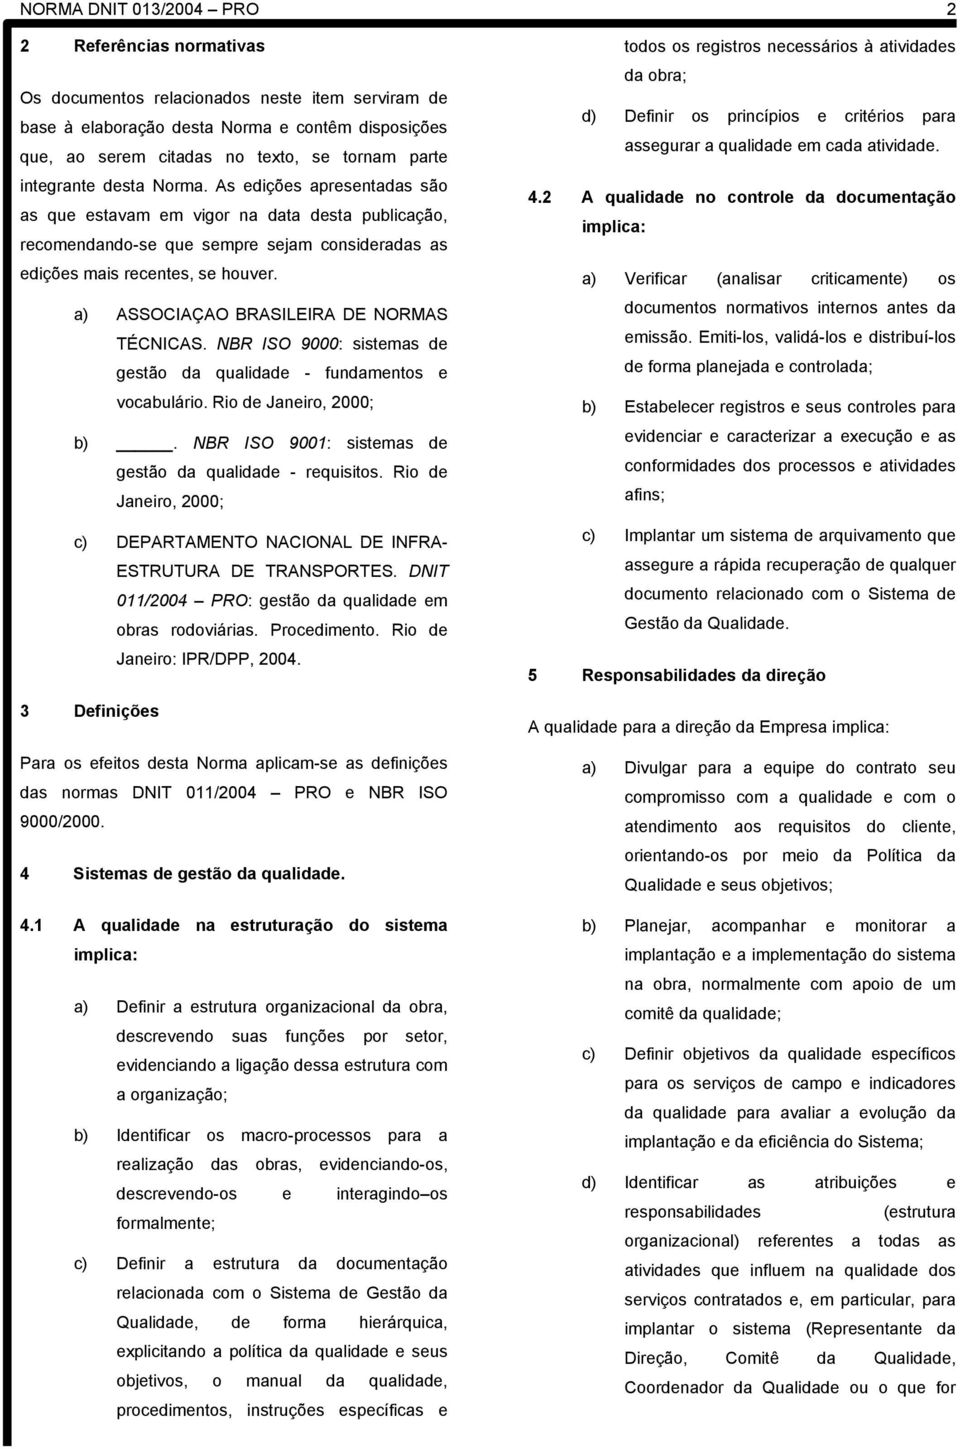 a) ASSOCIAÇAO BRASILEIRA DE NORMAS TÉCNICAS. NBR ISO 9000: sistemas de gestão da qualidade - fundamentos e vocabulário. Rio de Janeiro, 2000; b).